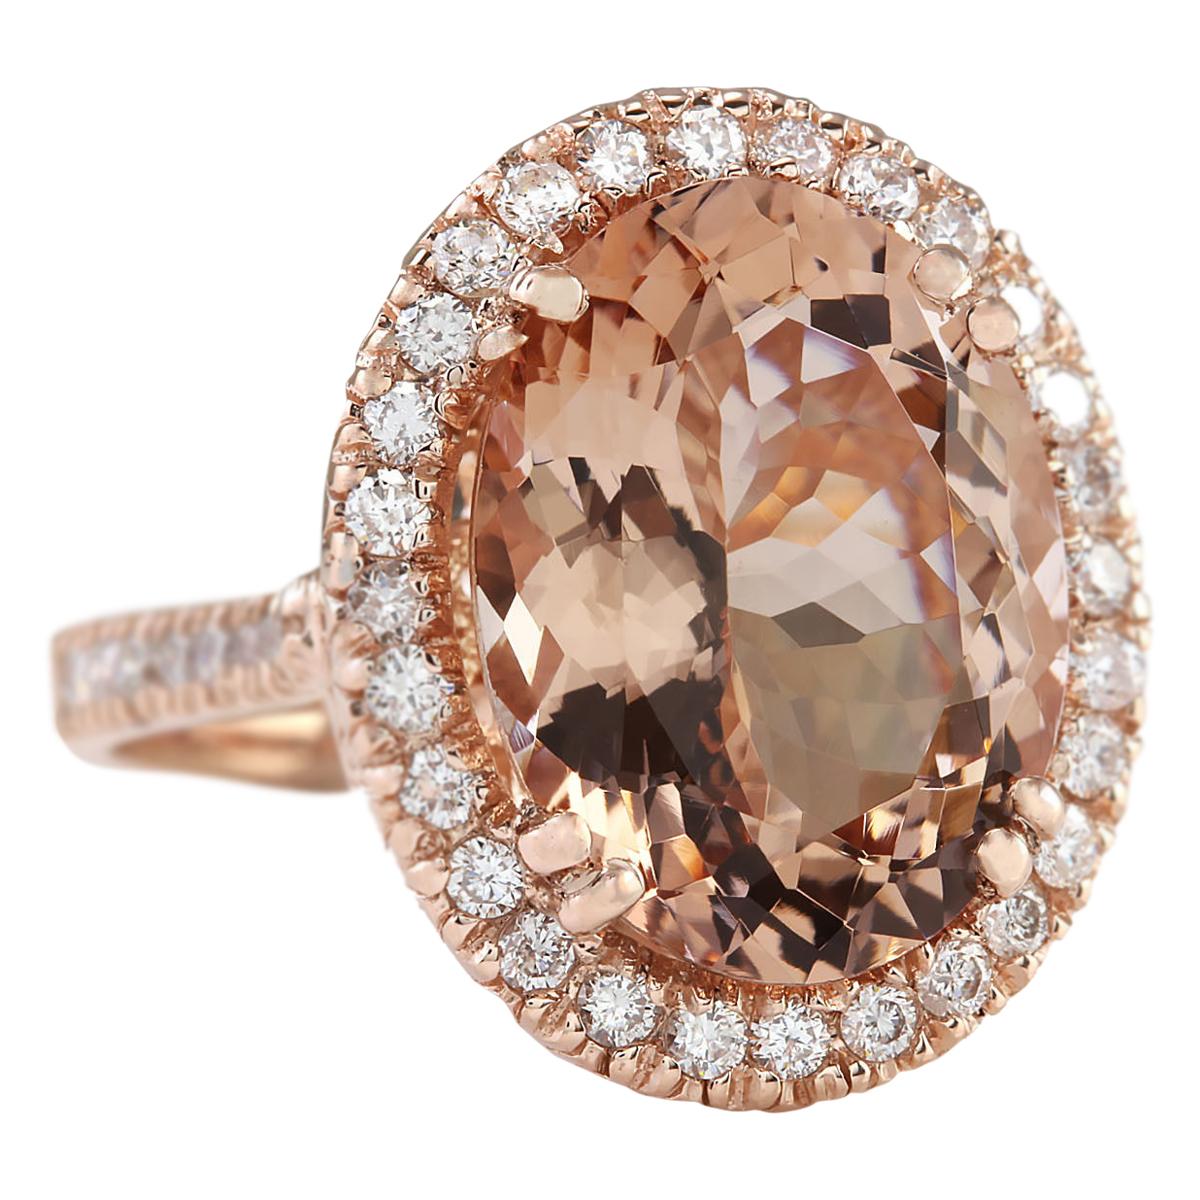 8.26 Carat Natural Morganite 14 Karat Rose Gold Diamond Ring
Stamped: 14K Rose Gold
Total Ring Weight: 9.0 Grams
Total Natural Morganite Weight is 7.51 Carat (Measures: 16.00x12.00 mm)
Color: Peach
Total Natural Diamond Weight is 0.75 Carat
Color: